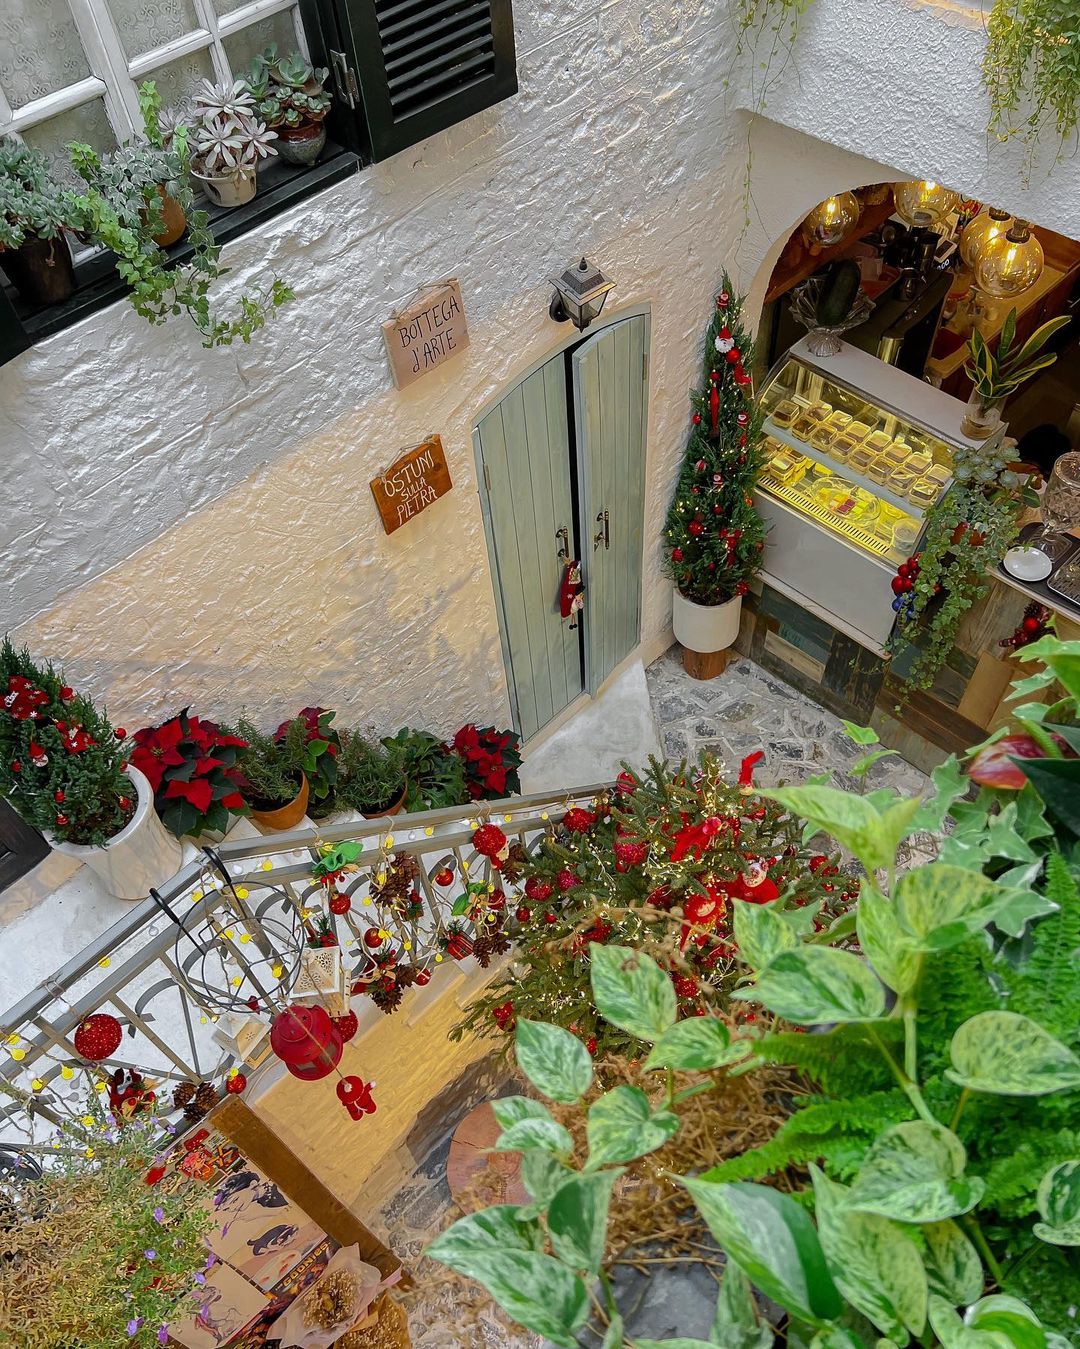 Hưởng ứng không khí Giáng sinh sớm tại những quán cà phê nằm trong ngôi biệt thự phong cách Châu Âu - ảnh 14